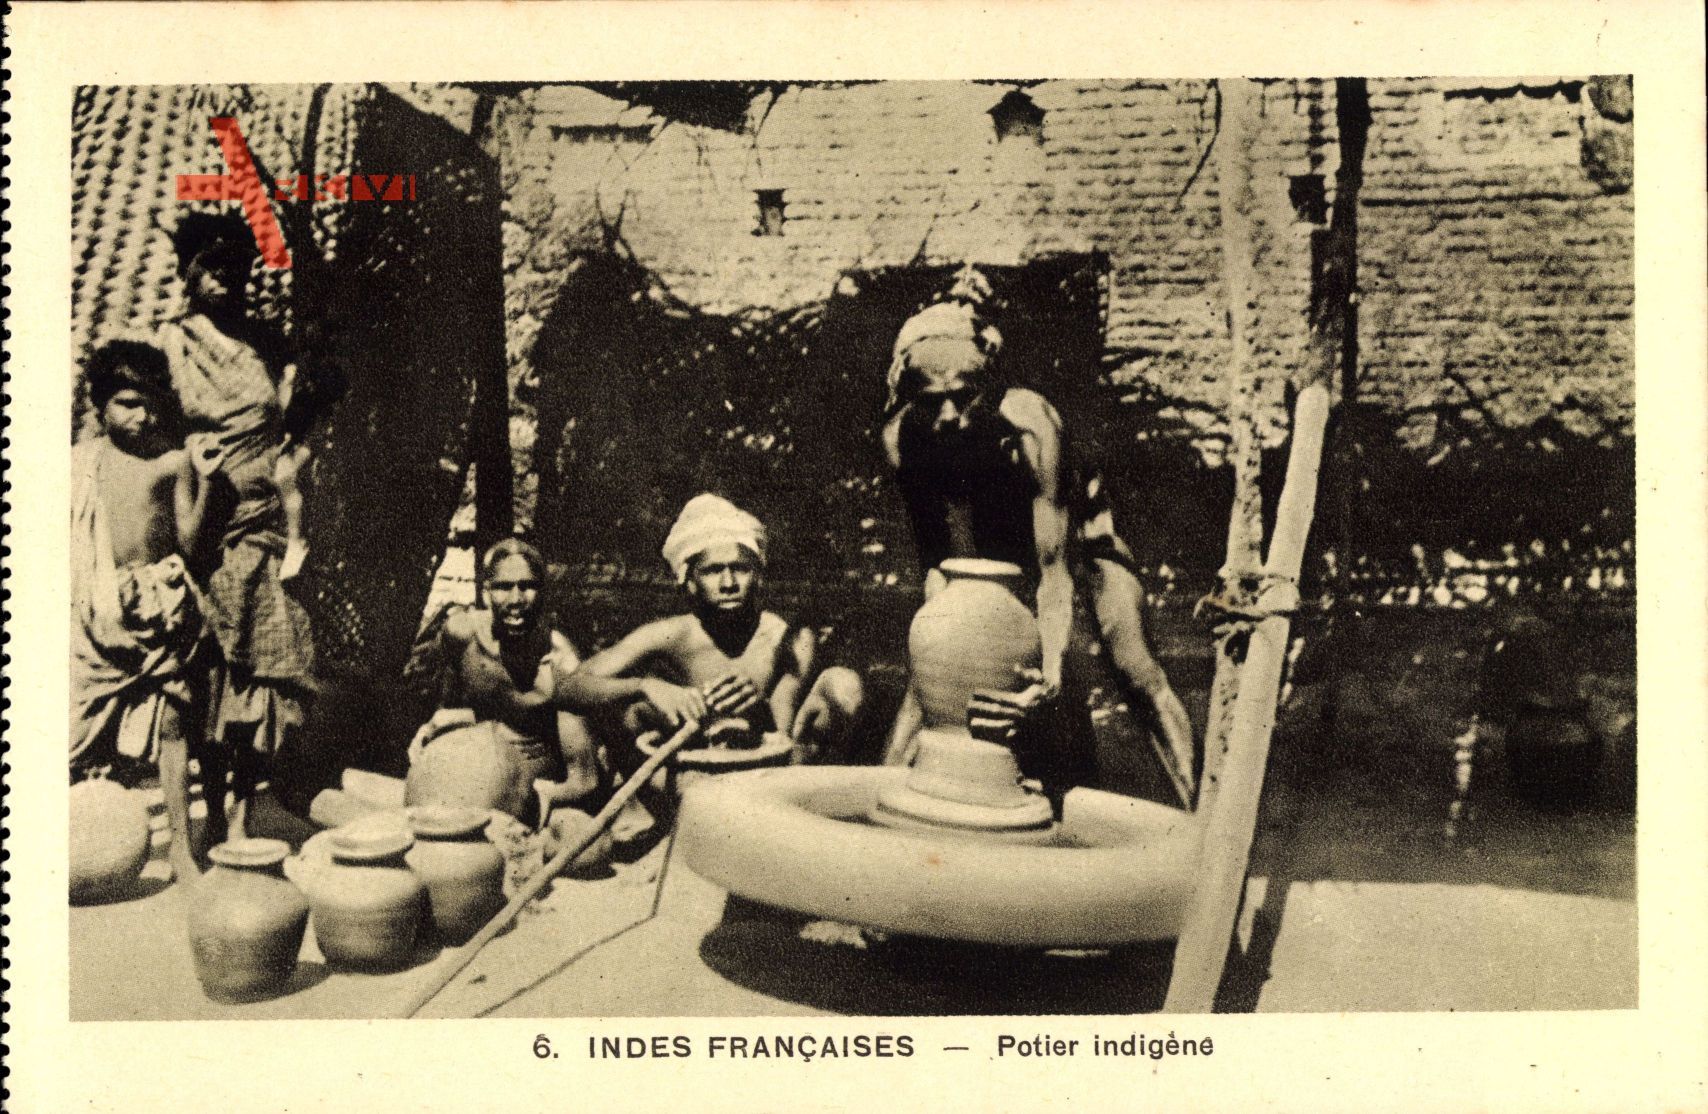 Indes Francaises, Potier indigène, Indischer Töpfer bei der Arbeit